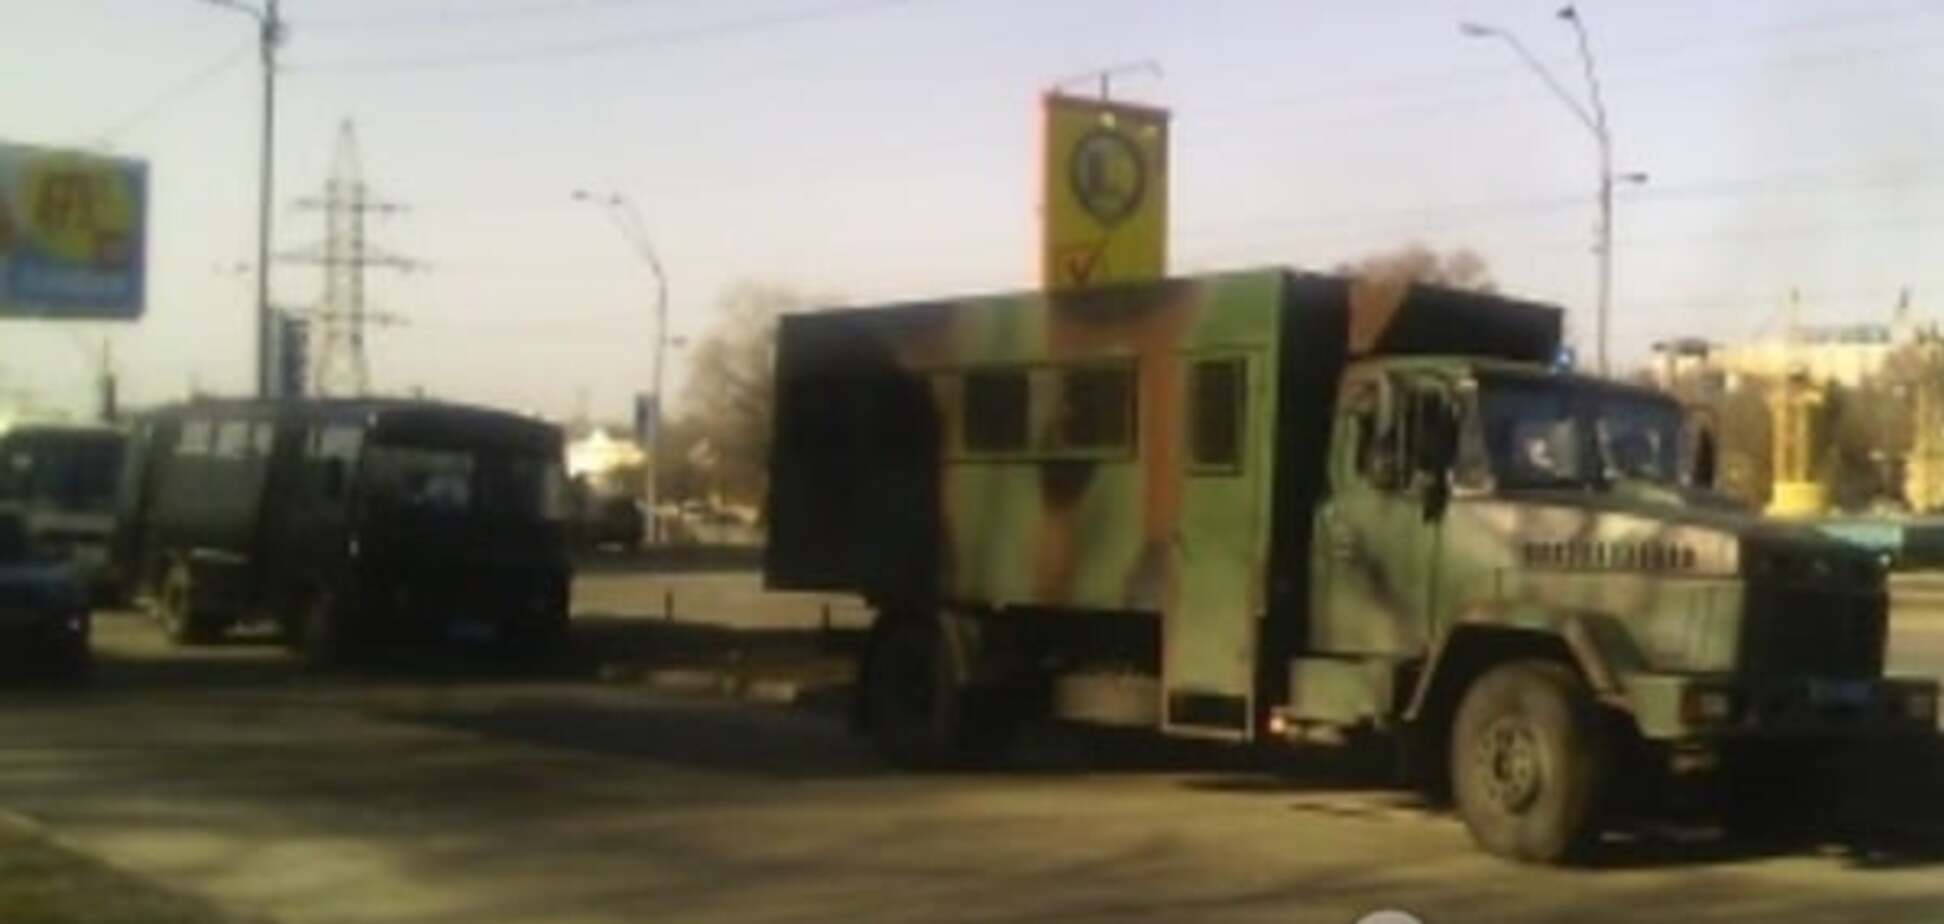 В Киеве на скандальную стройку прибыли грузовики с Нацгвардией: опубликованы фото